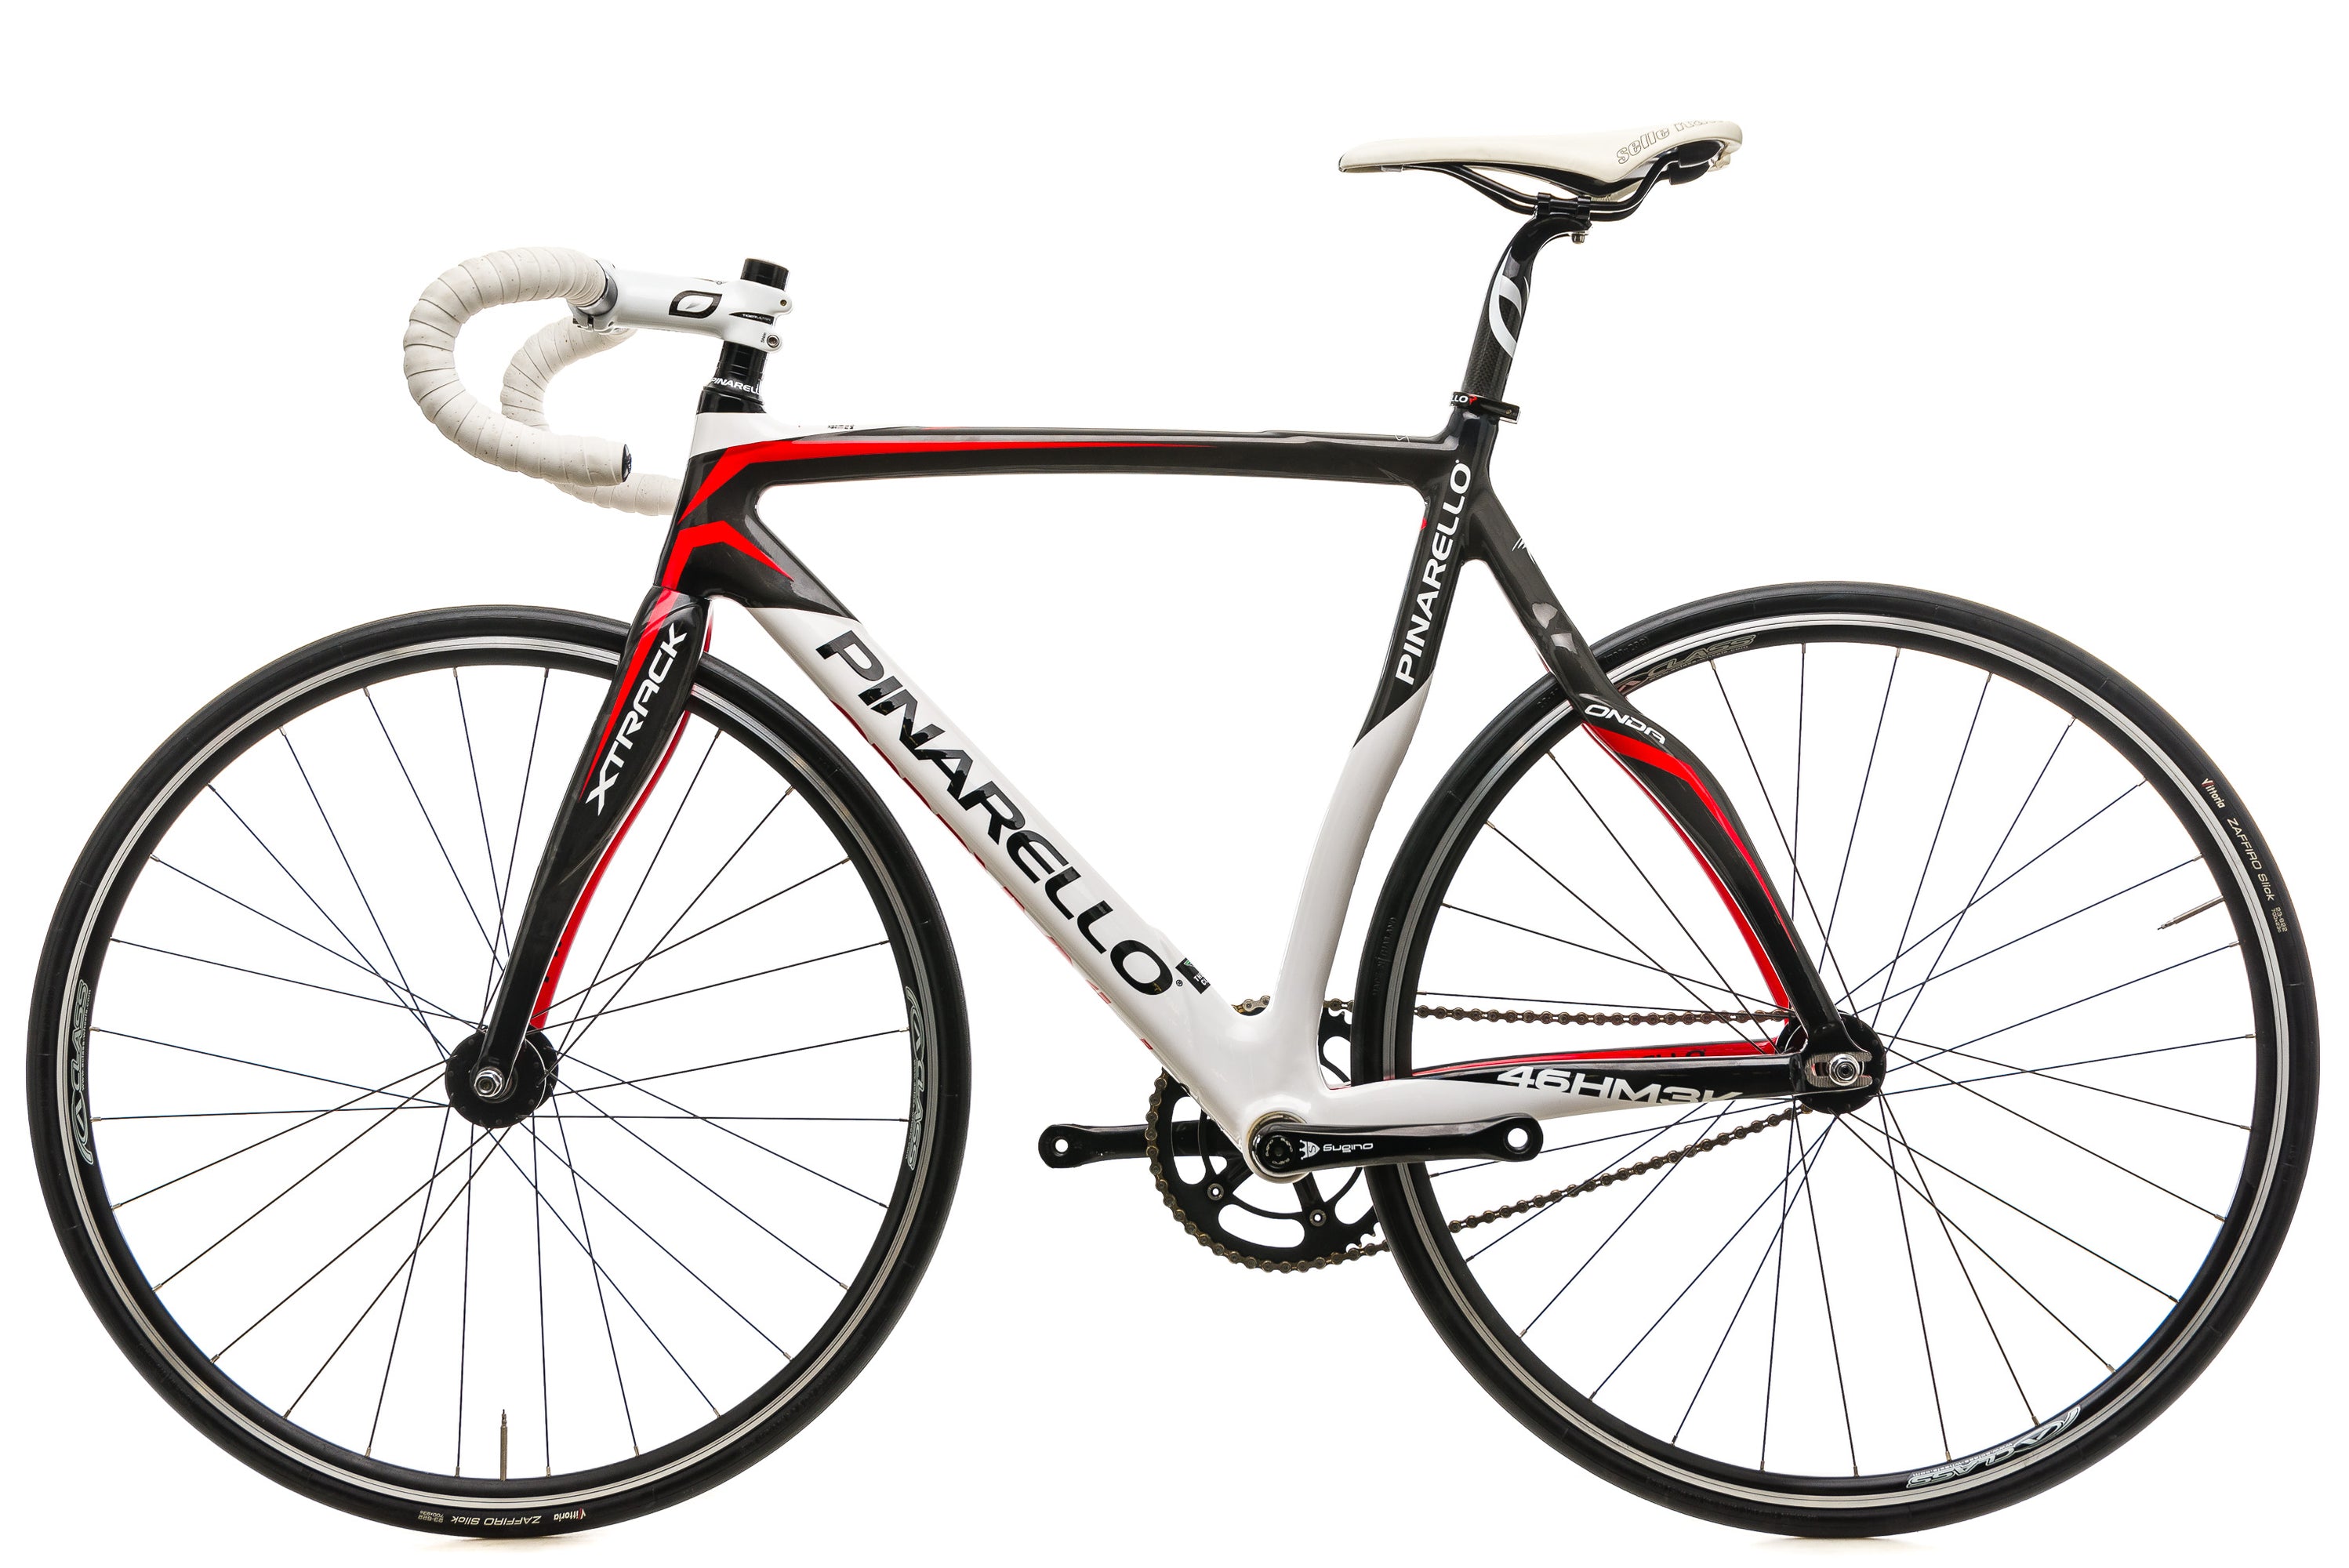 Pinarello XTRACK Track Bike - 2016, 51.5cm non-drive side